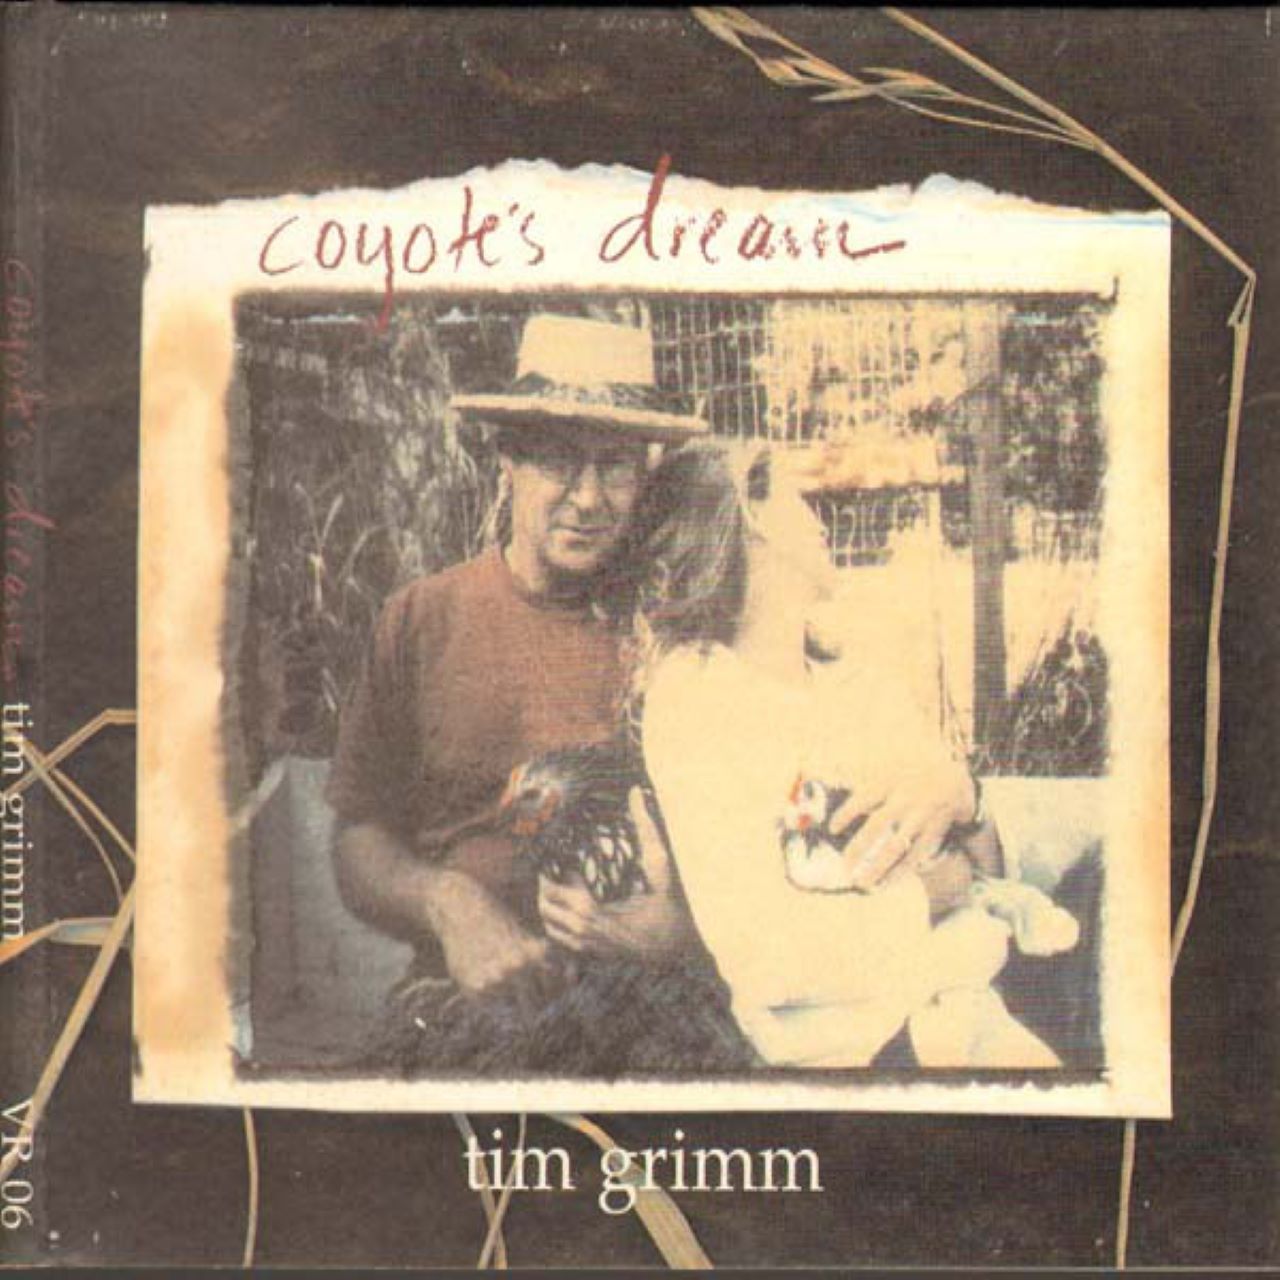 Tim Grimm - Coyote’s Dream cover album